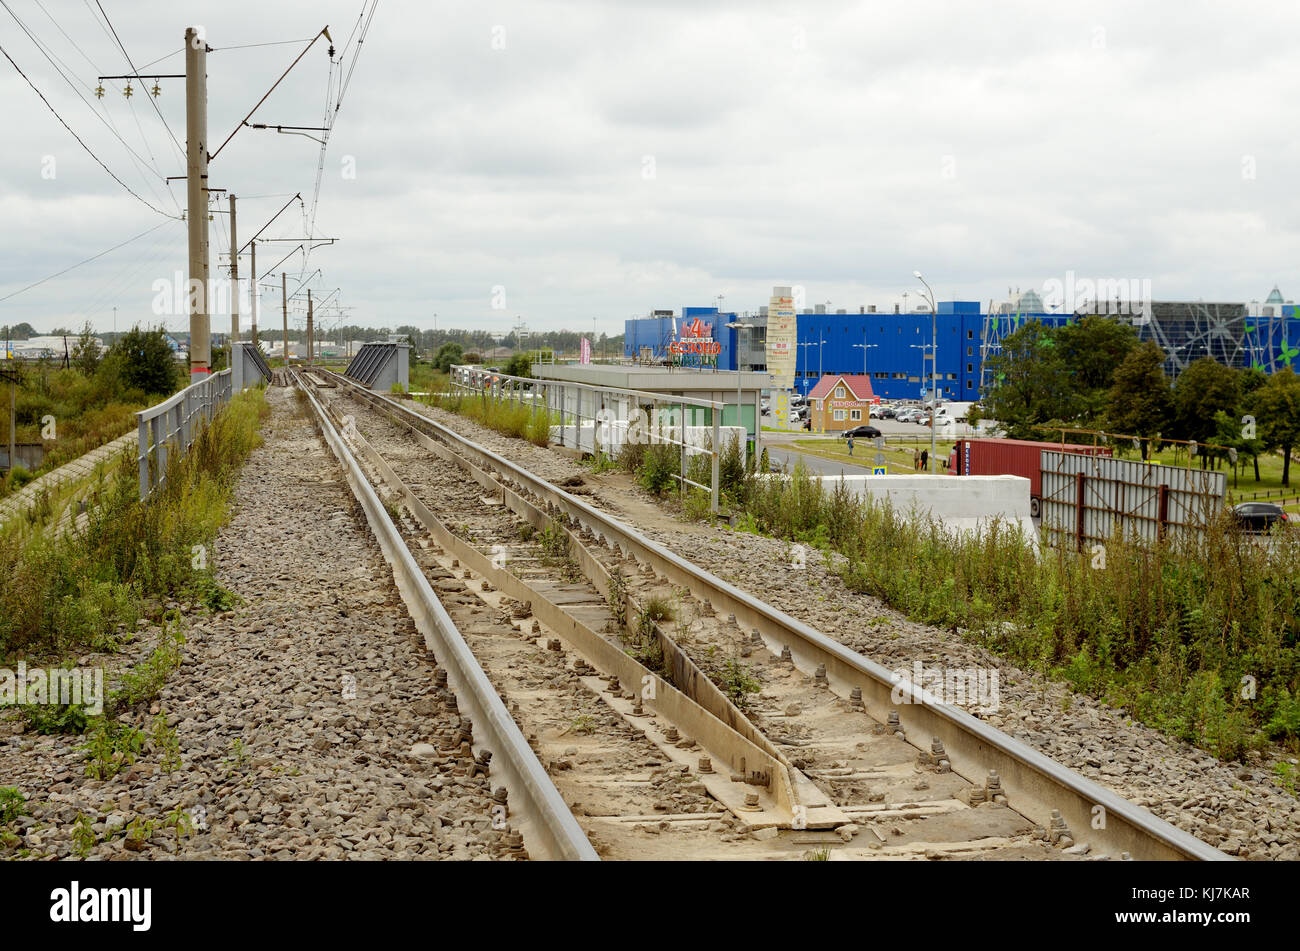 01.09.2016. Russland. saint-petersburg. Eine Eisenbahn für den Zug durch die Stadt. Stockfoto